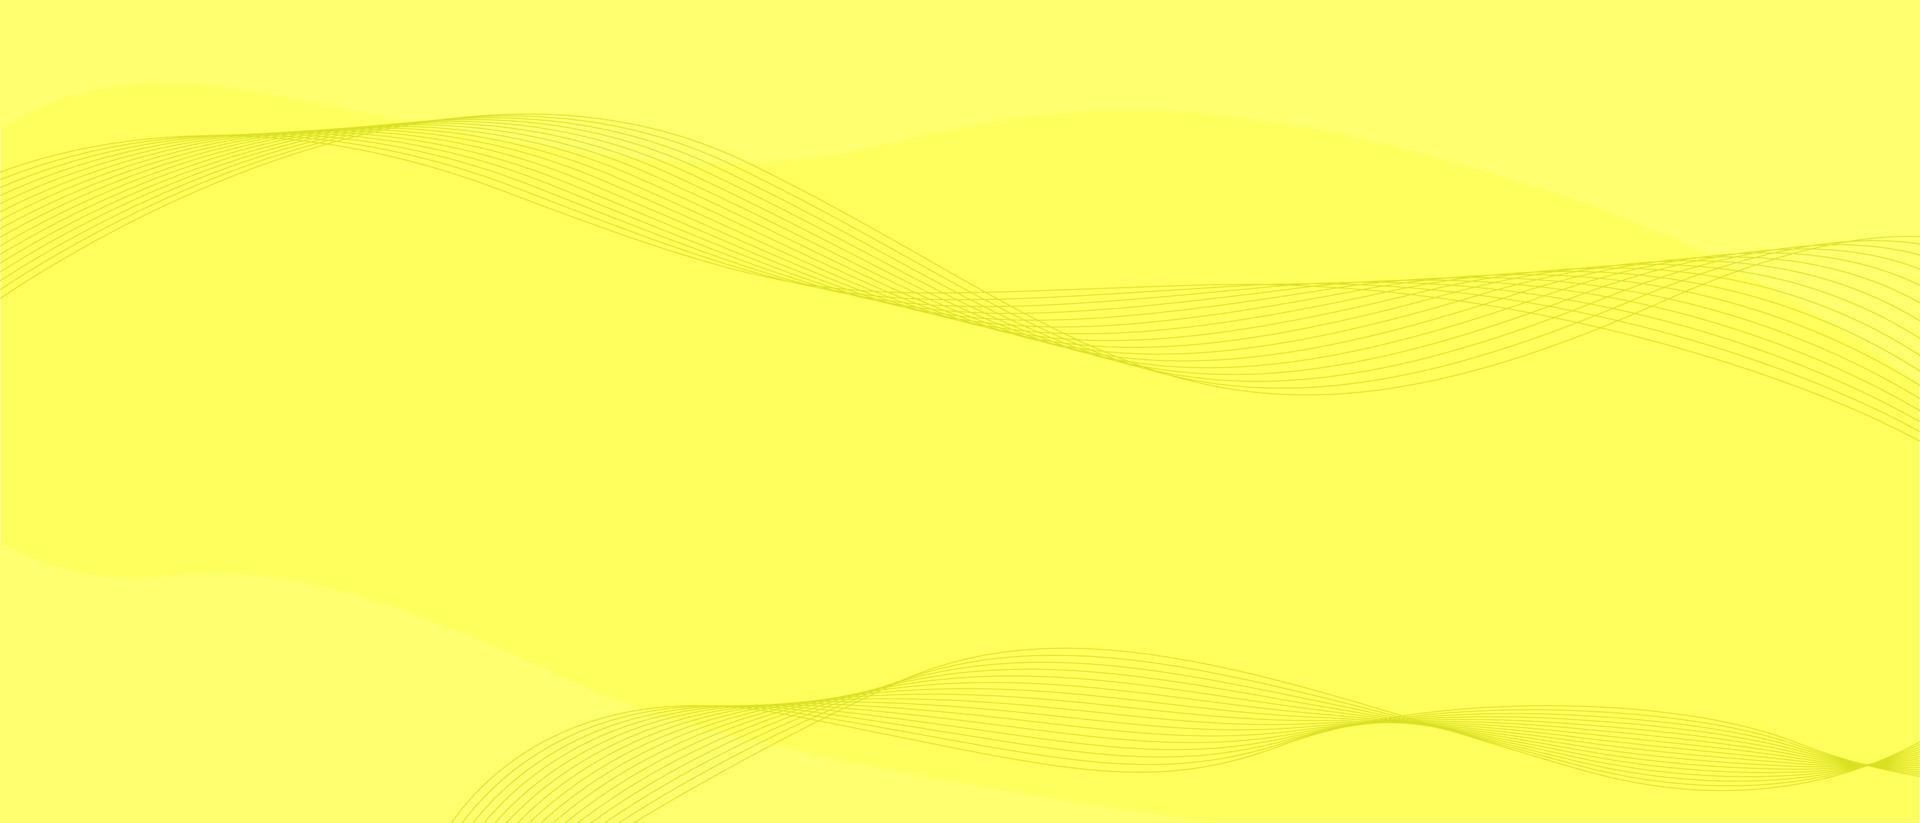 fond jaune avec une ligne ondulée géométrique vecteur